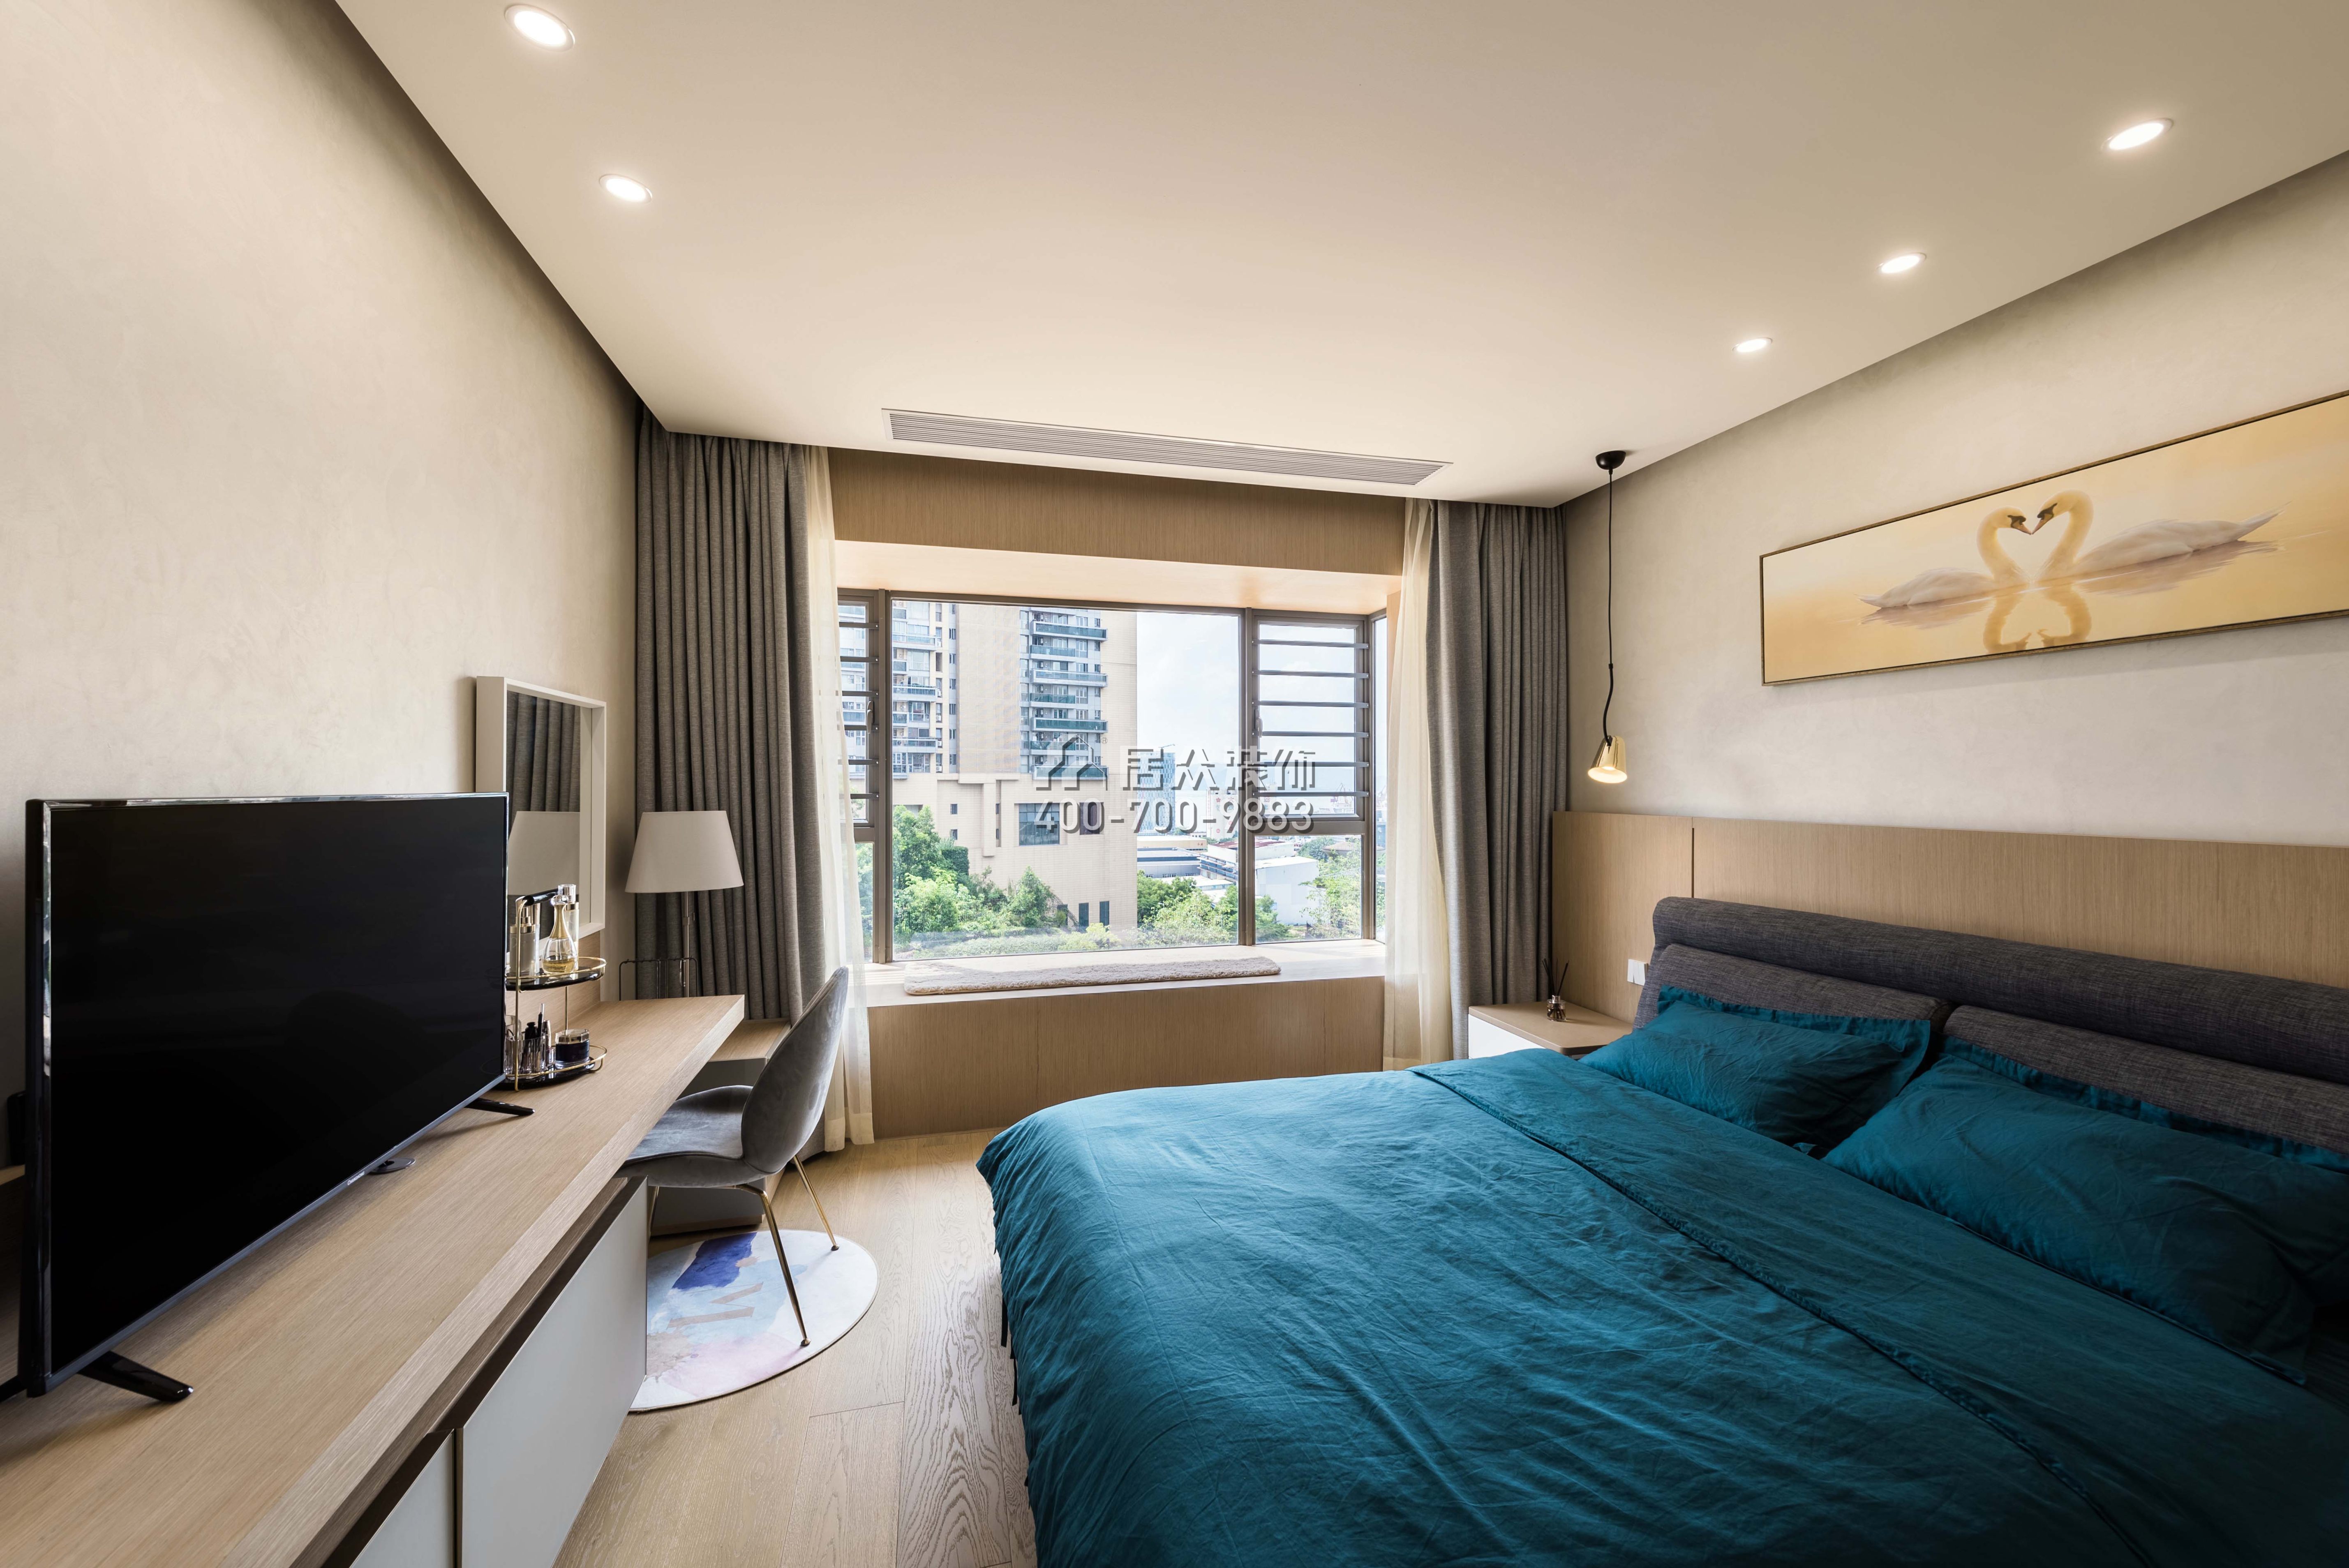 龙瑞佳园150平方米现代简约风格平层户型卧室装修效果图